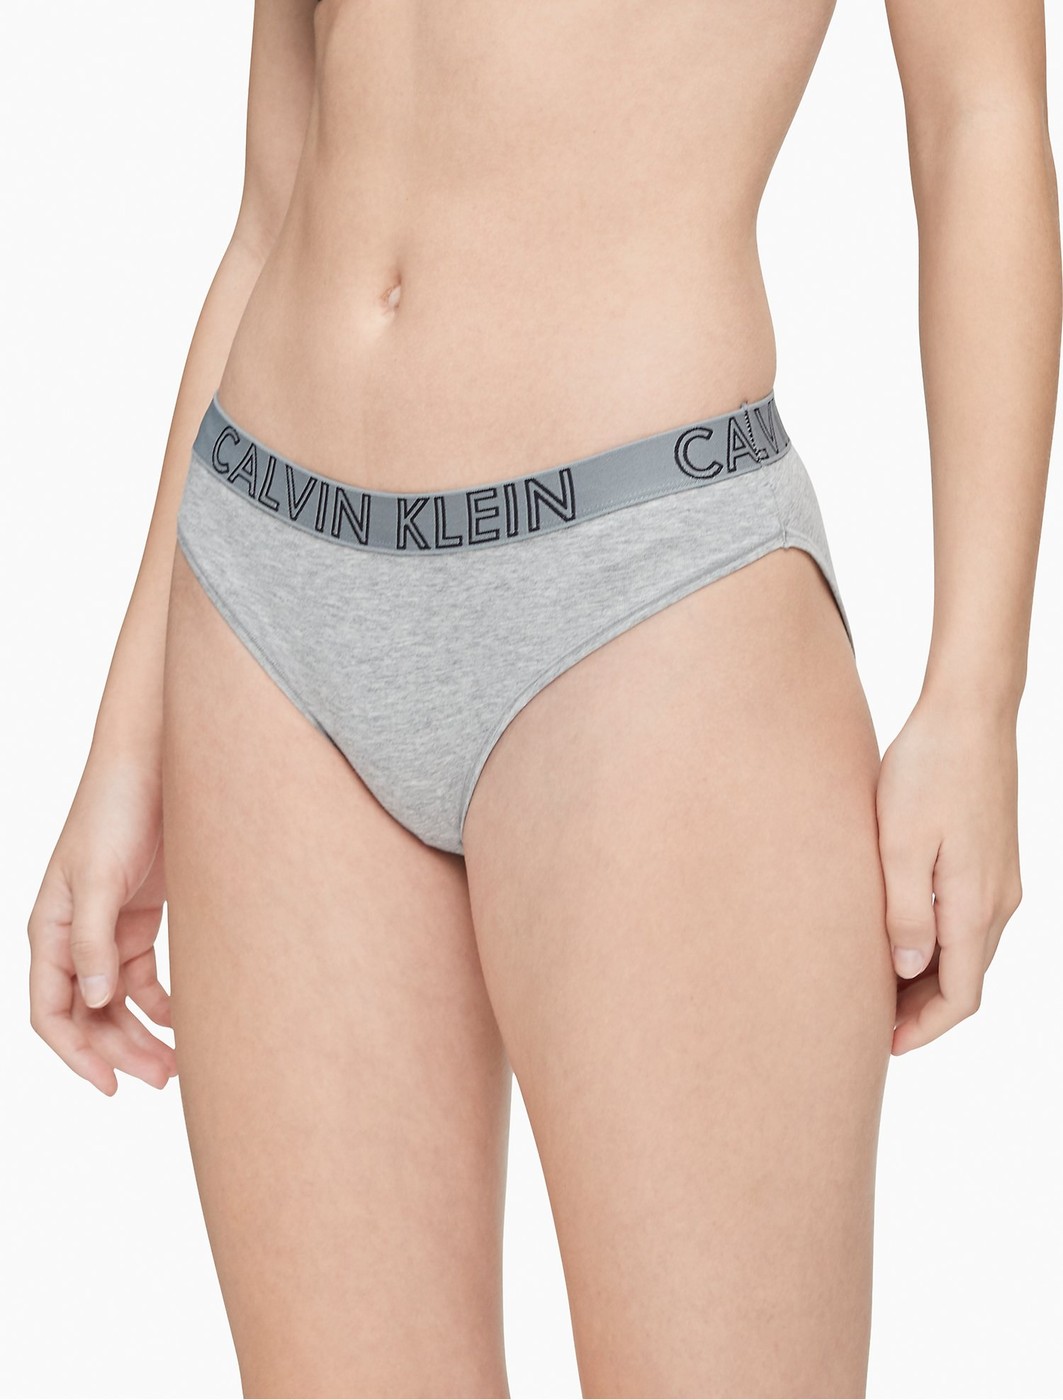 Трусики - женские трусы Calvin Klein